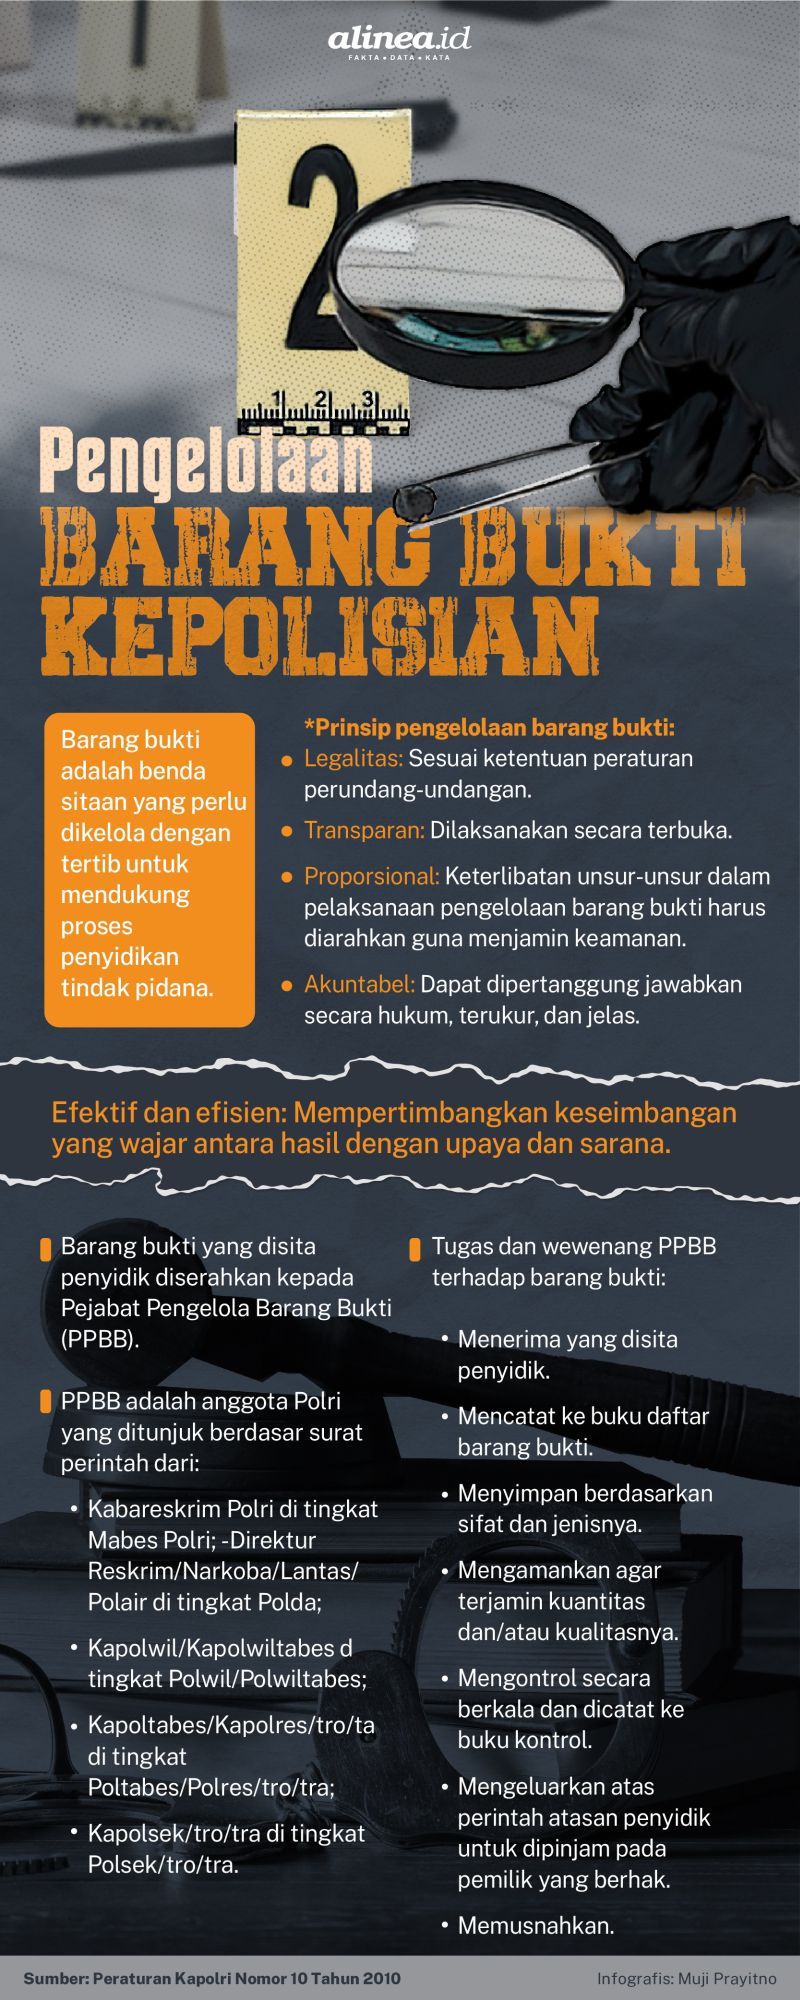 Infografik barang bukti. Alinea.id/Mudji Prayitno